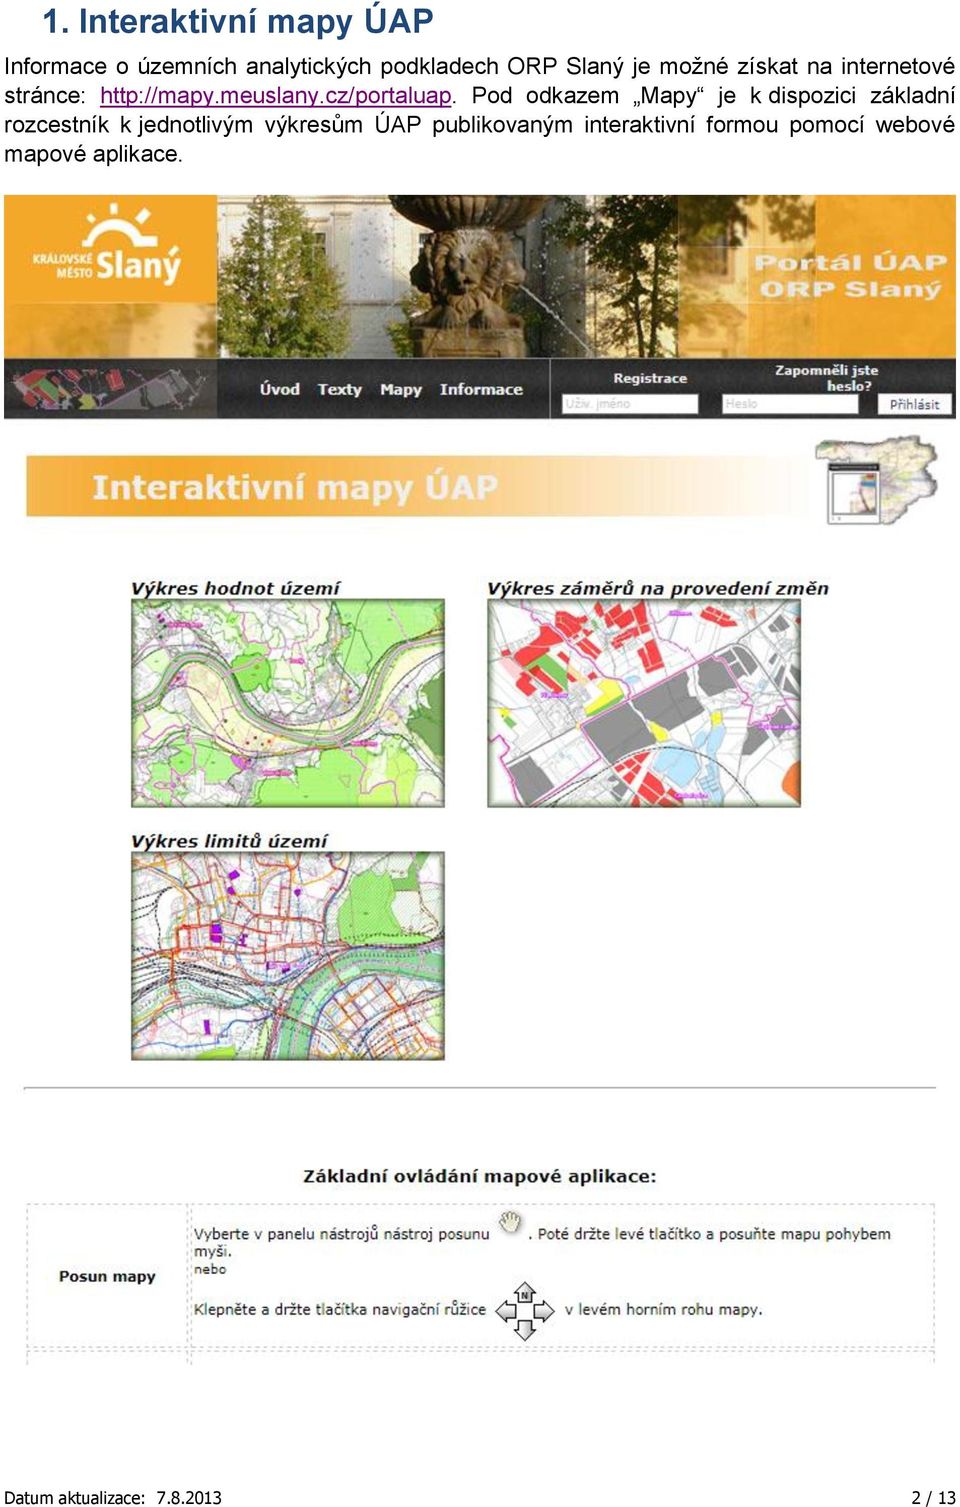 Pod odkazem Mapy je k dispozici základní rozcestník k jednotlivým výkresům ÚAP